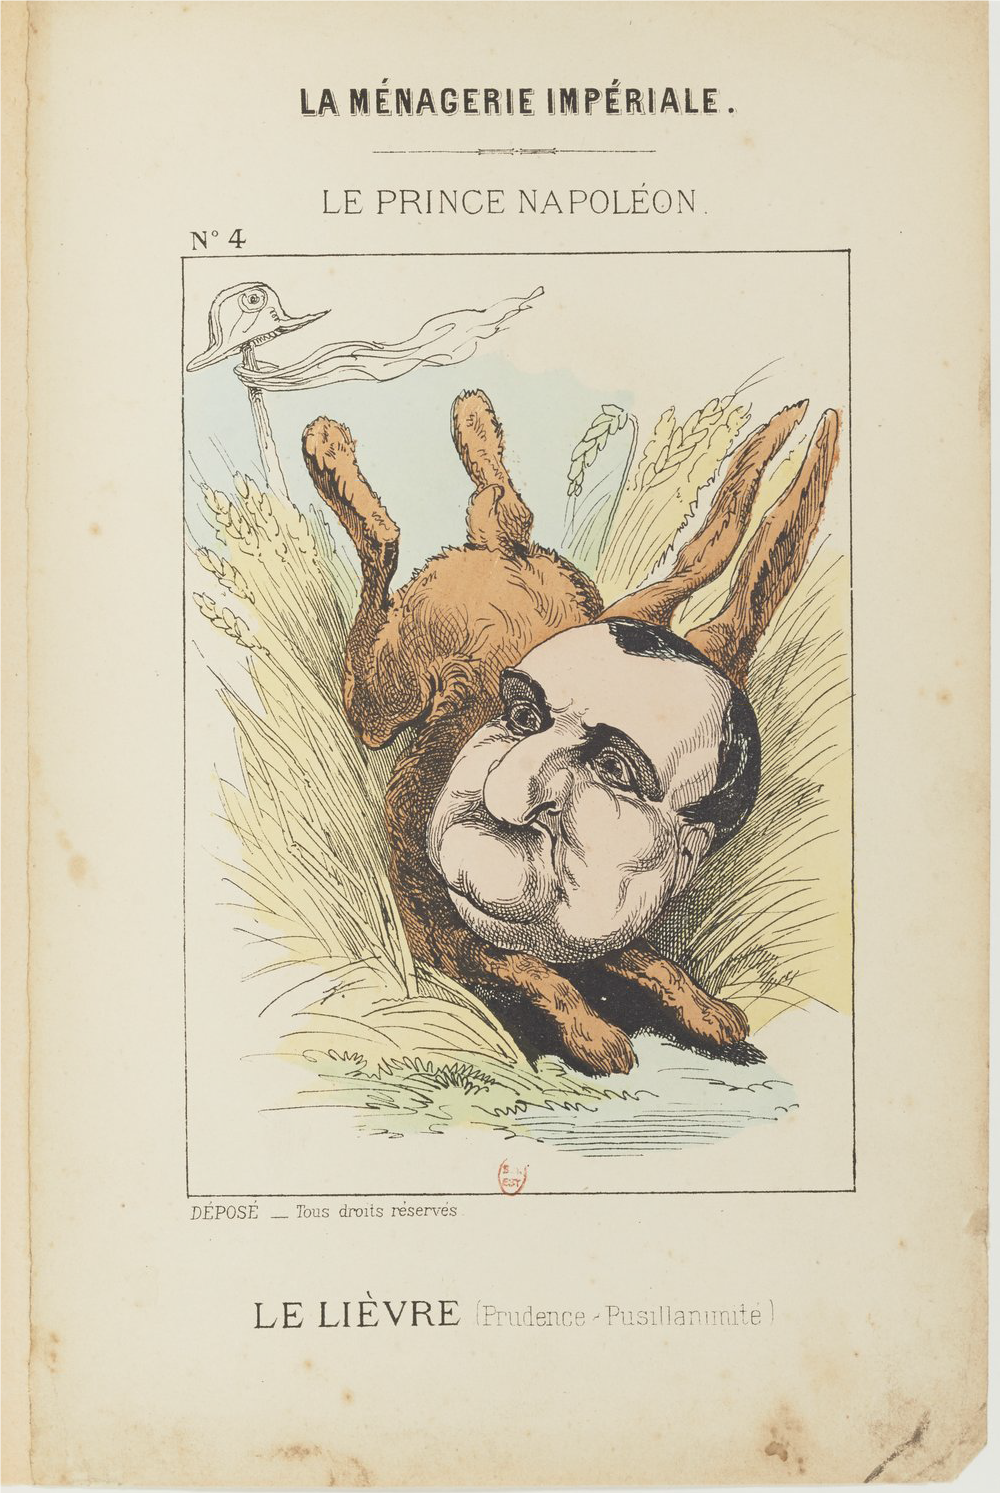 Hadol, Paul.1870. «Le Lièvre», La Ménagerie impériale [Illustration]
